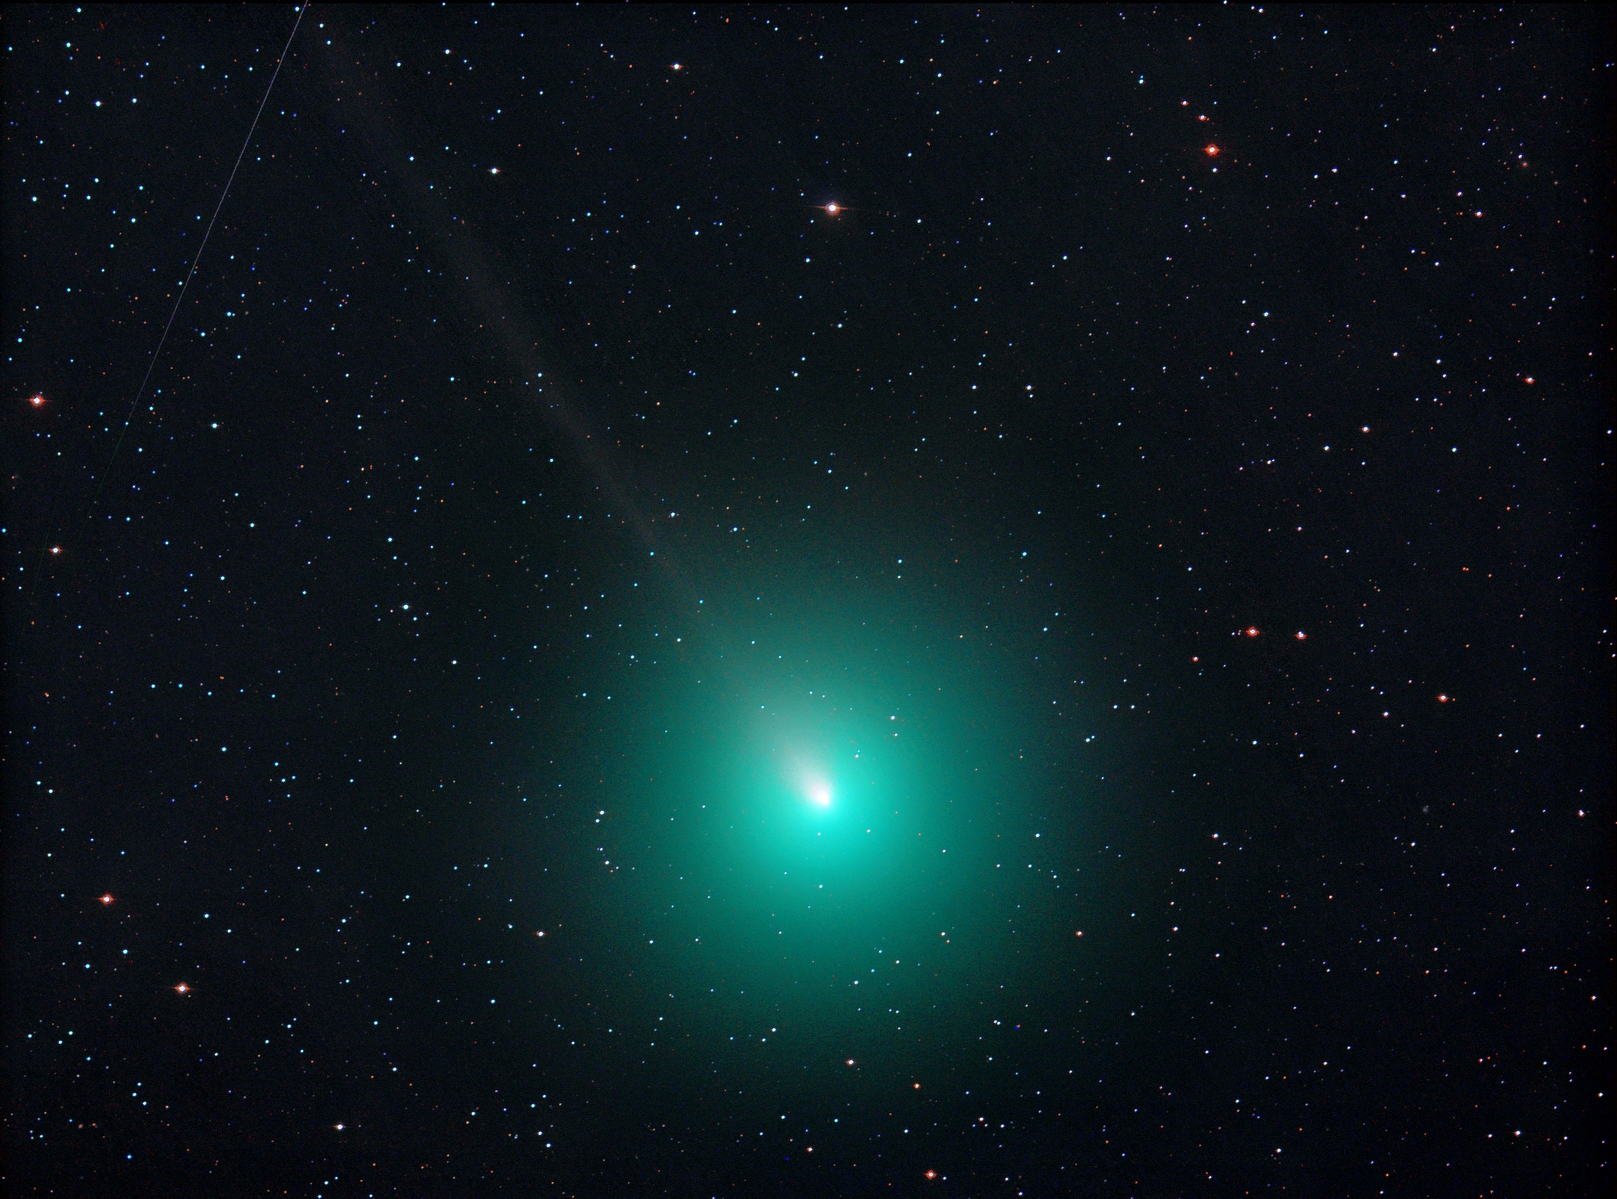 Komet Wirtanen mit dem Teleskop beobachten